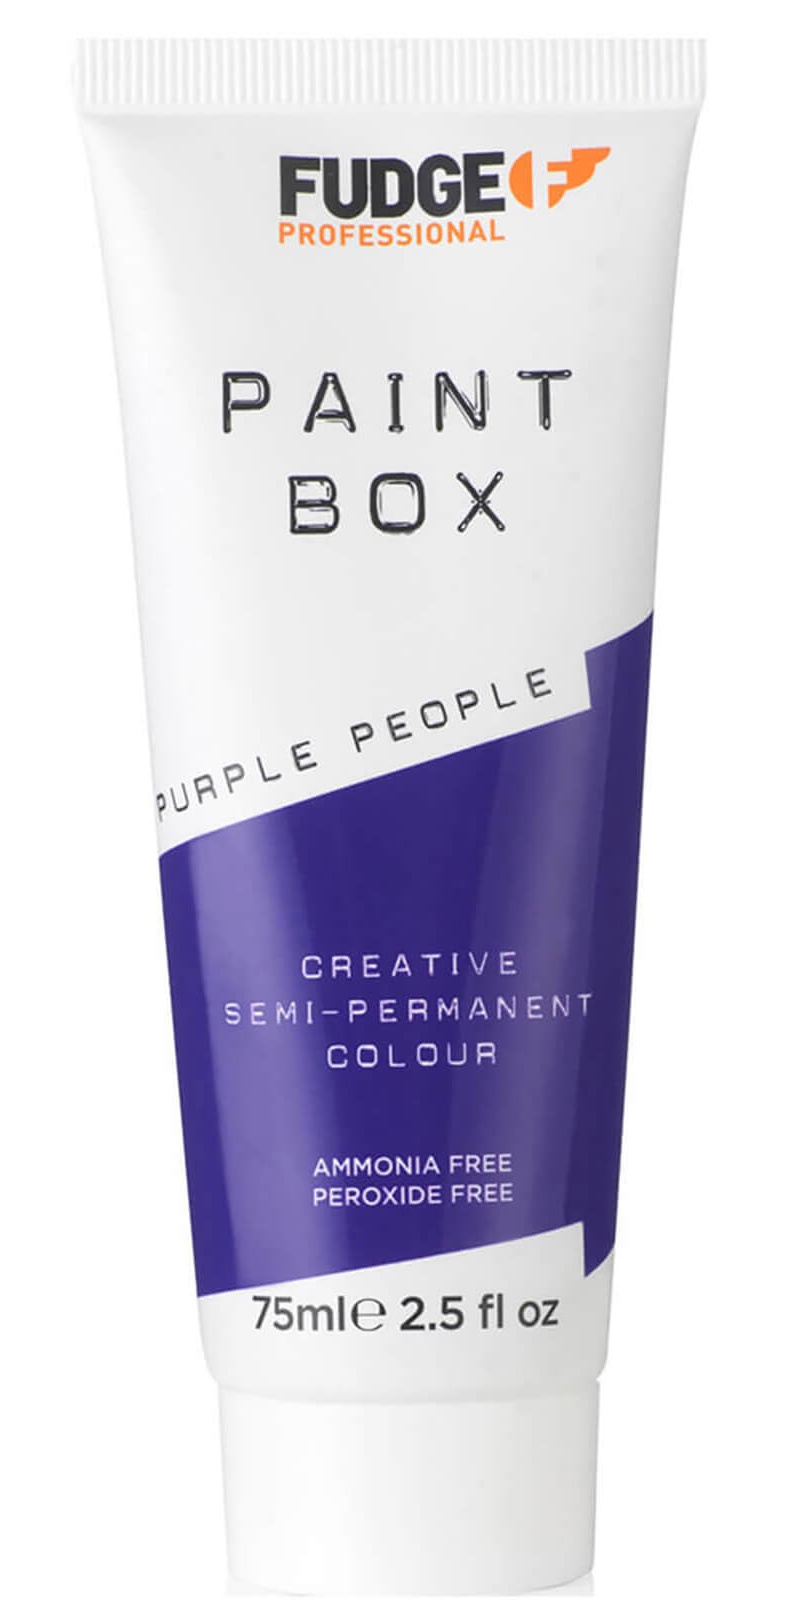 Fudge Professional Paint Box Purple People